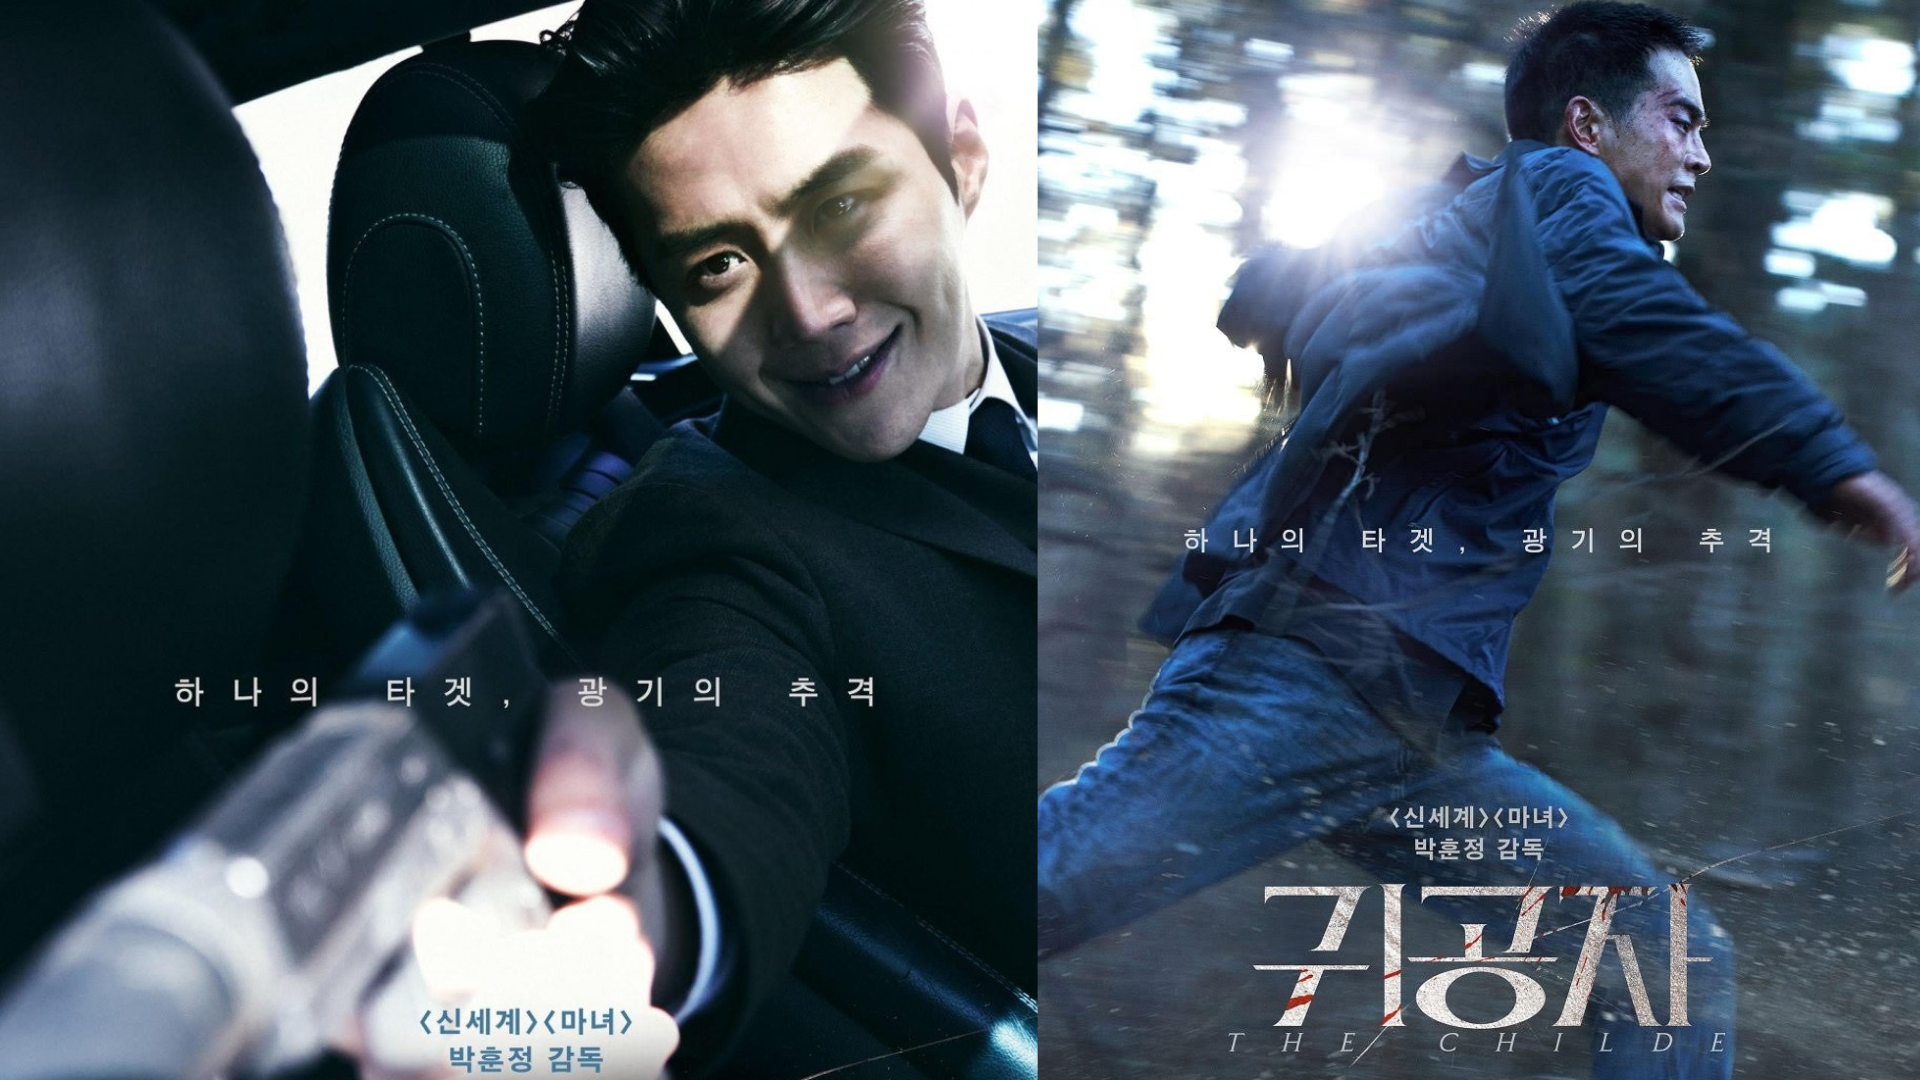 Kim Seon Ho hóa ‘bad boy’ tái xuất màn ảnh rộng trong The Childe sau ồn ào đời tư